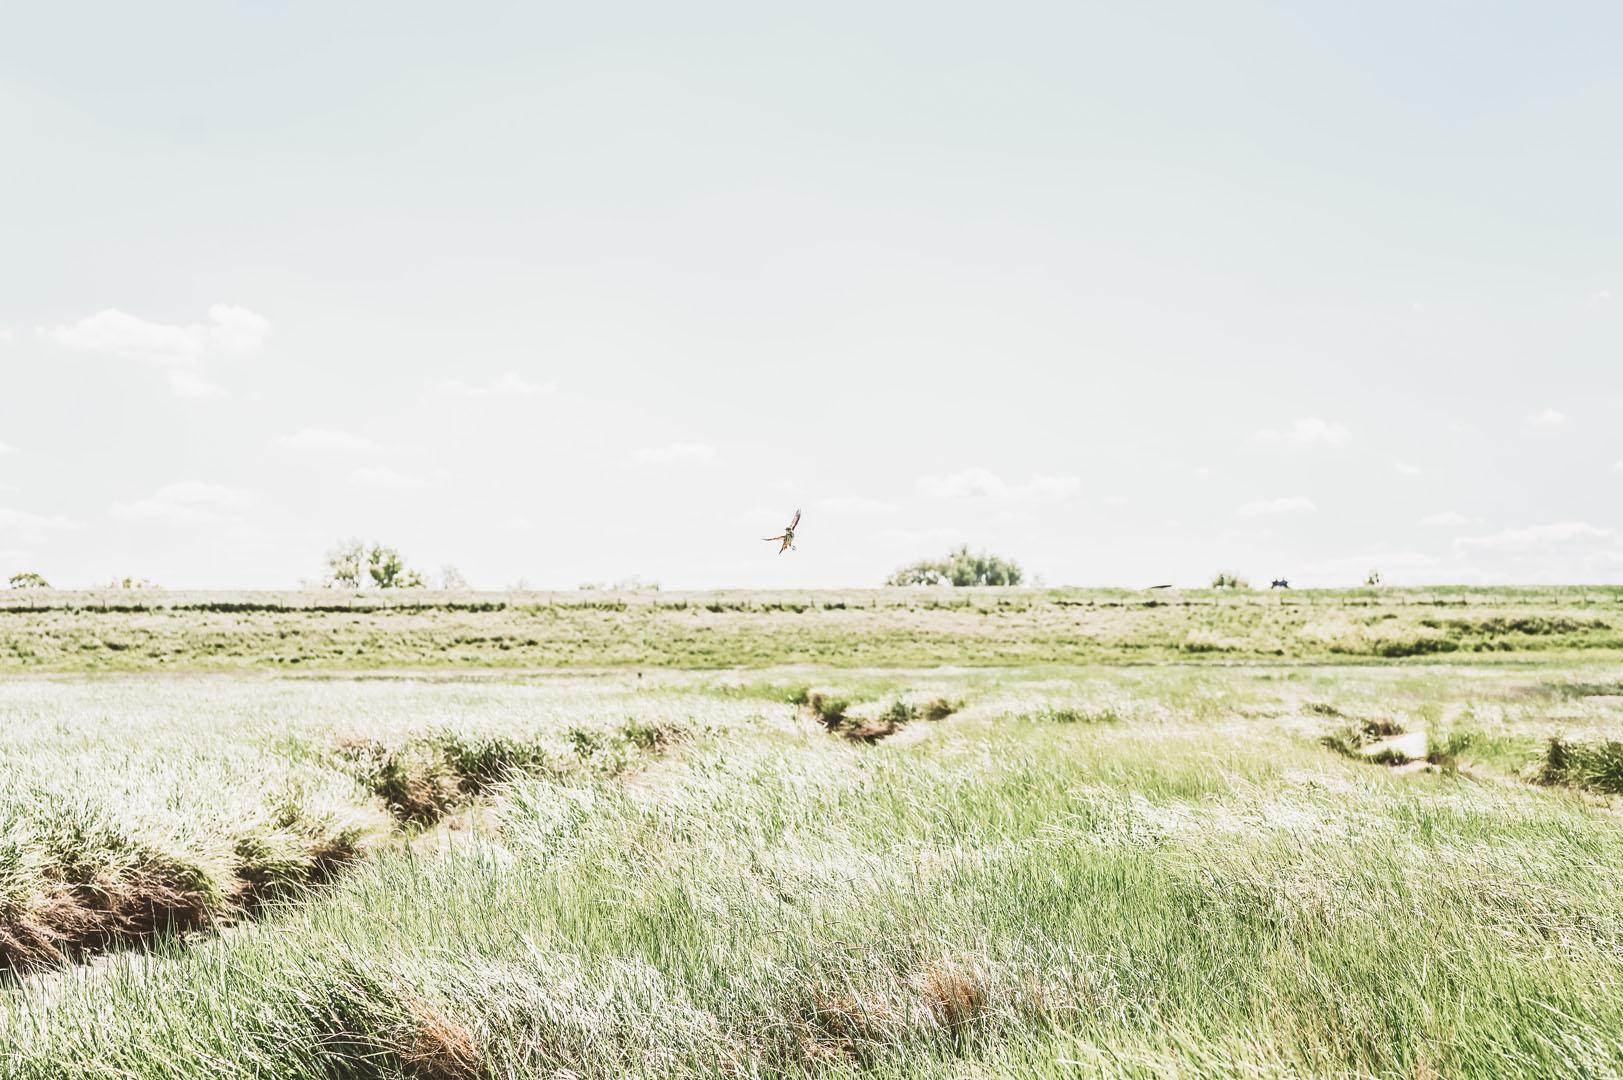 Verdonken Land van Saefthinge - ©@maviczl & Chelsey van Overmeiren